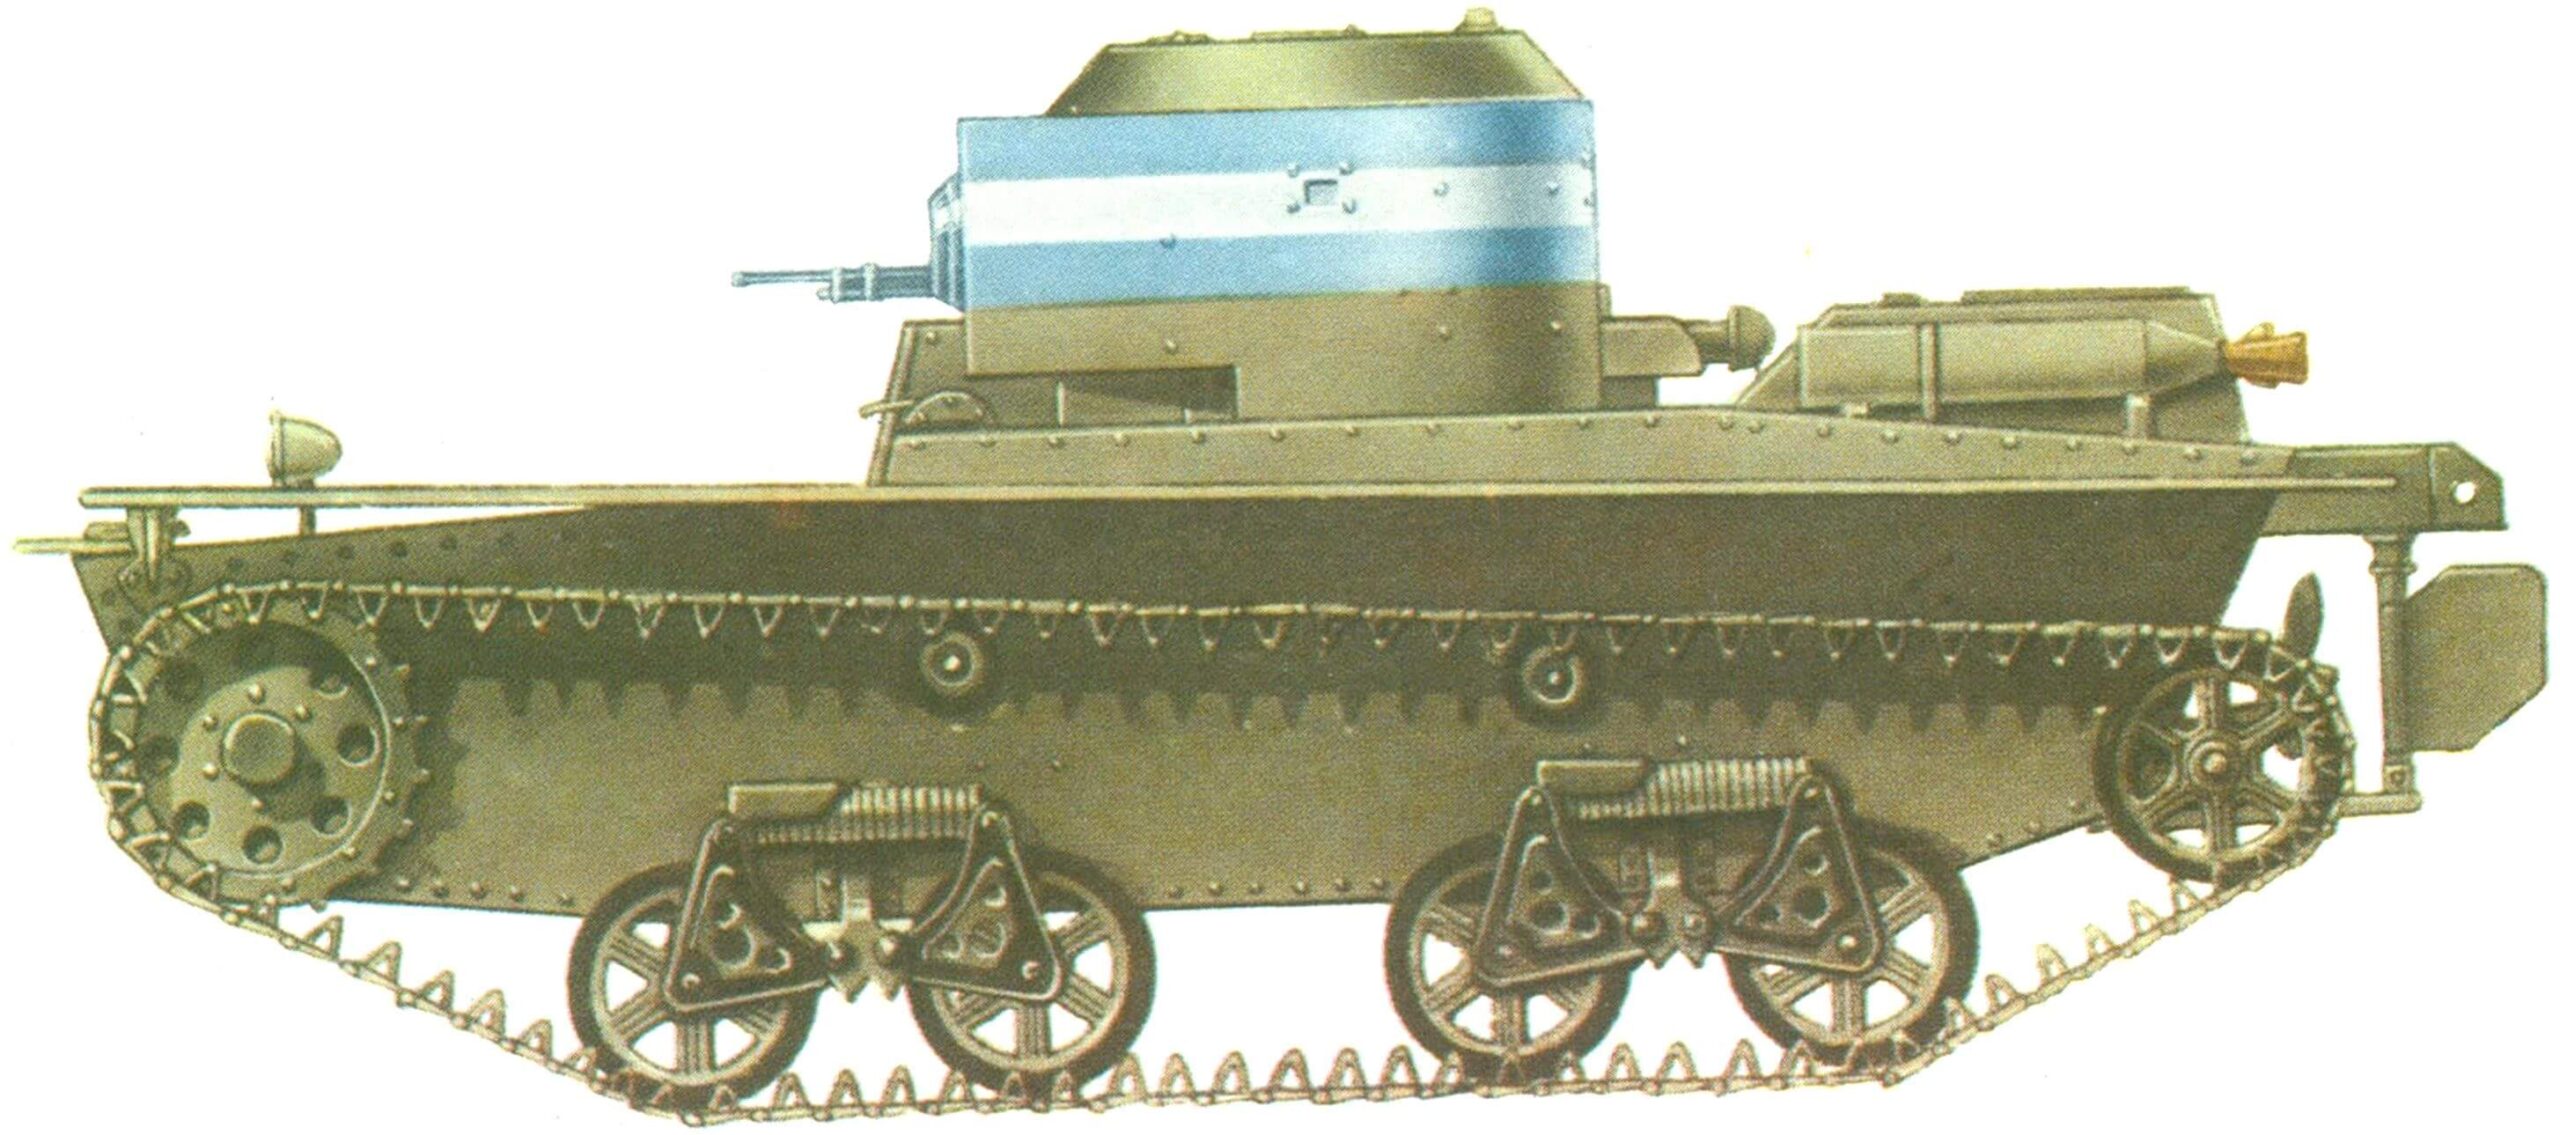 ТАНК Т-38 в типовой окраске, характерной для финских танковых частей.1940 г.